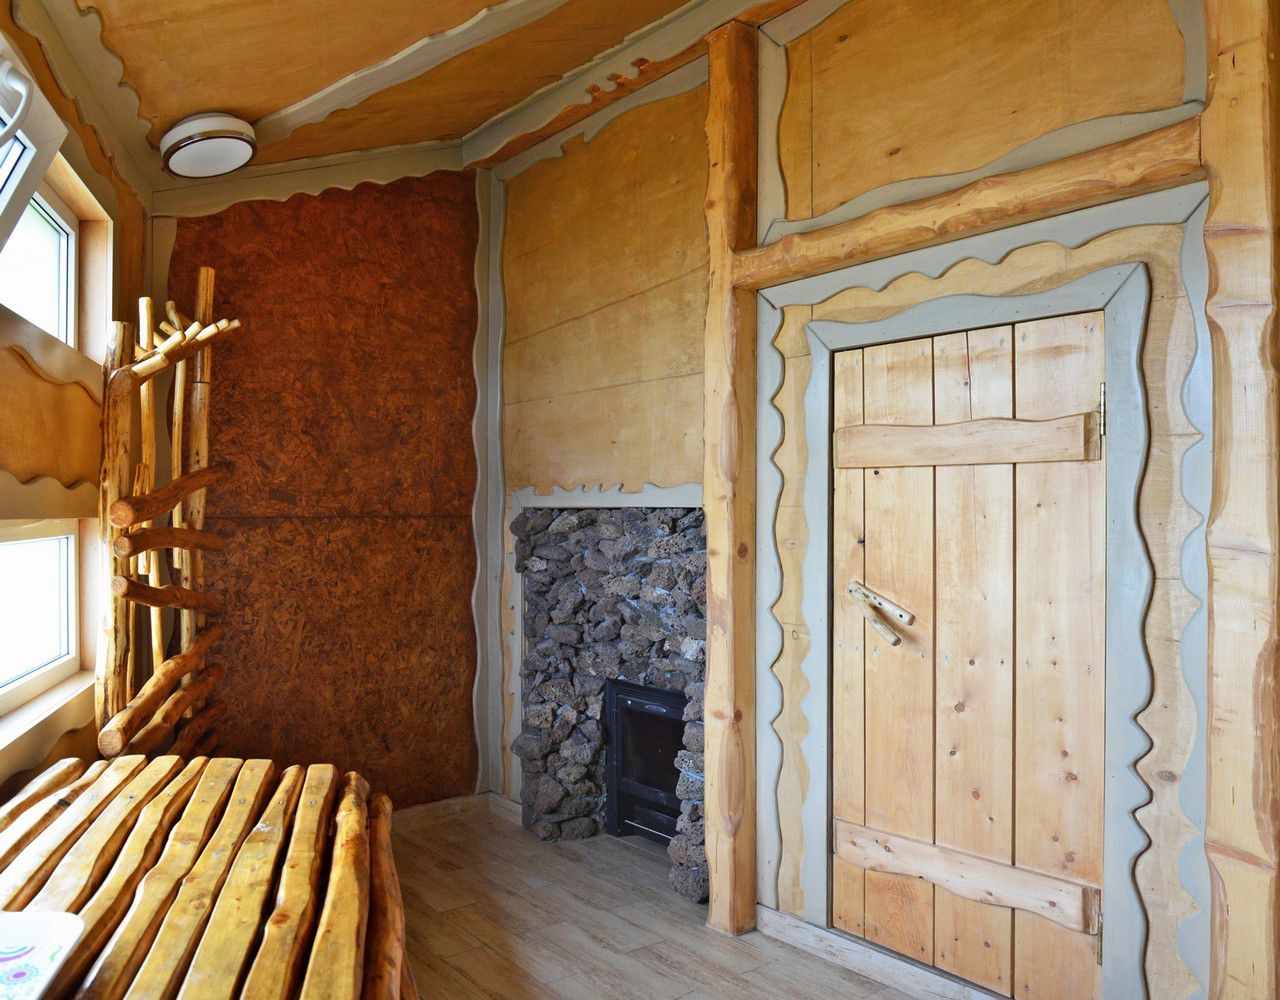 Ремонт деревянного дома своими руками дешево и красиво фото: 11 хороших идей — INMYROOM